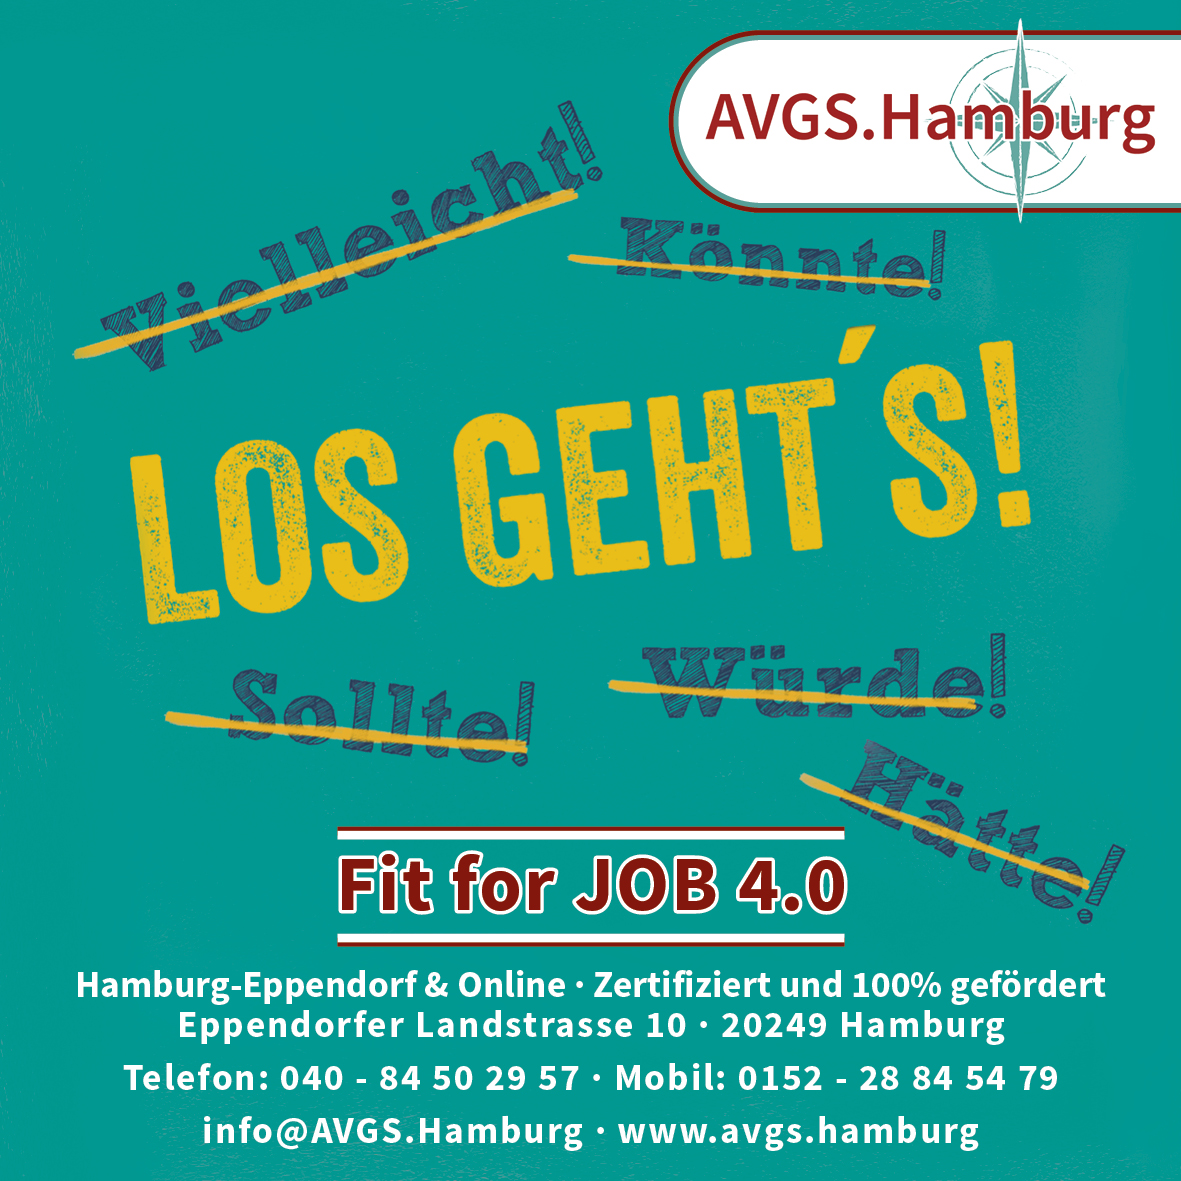 AVGS-Hamburg-LosGehtsLos